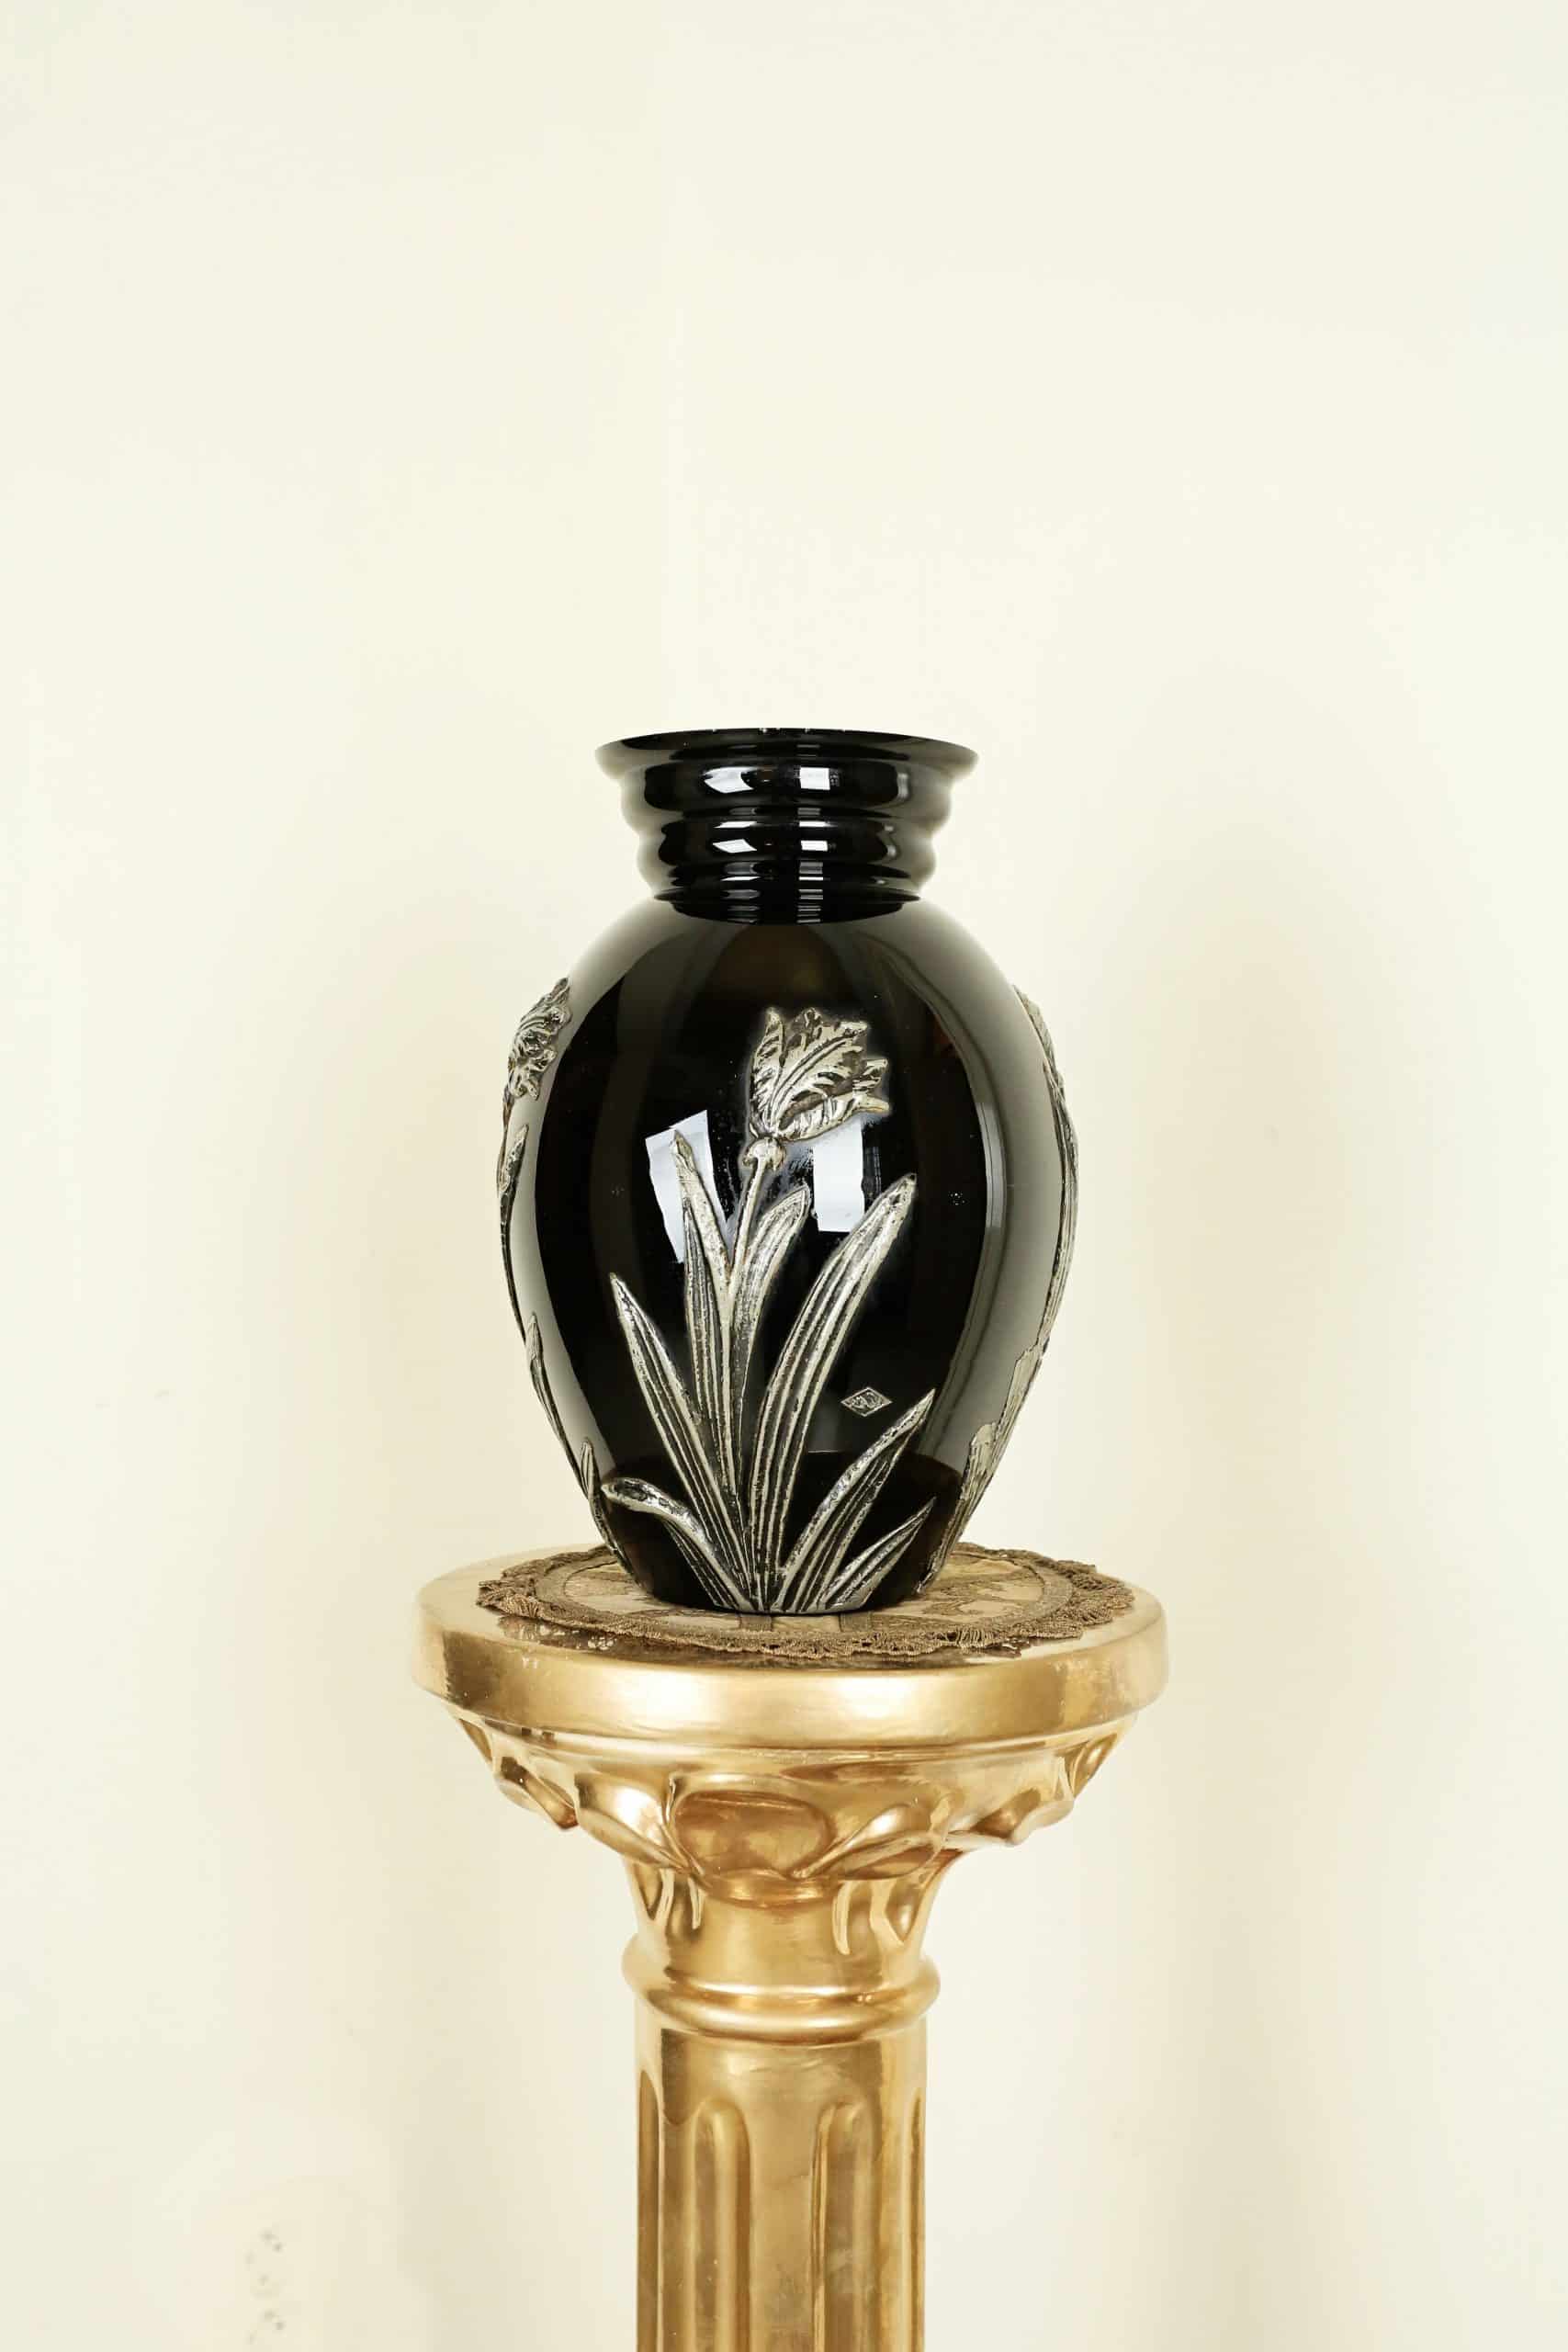 Hyalitová váza s cínovým zdobením, značená